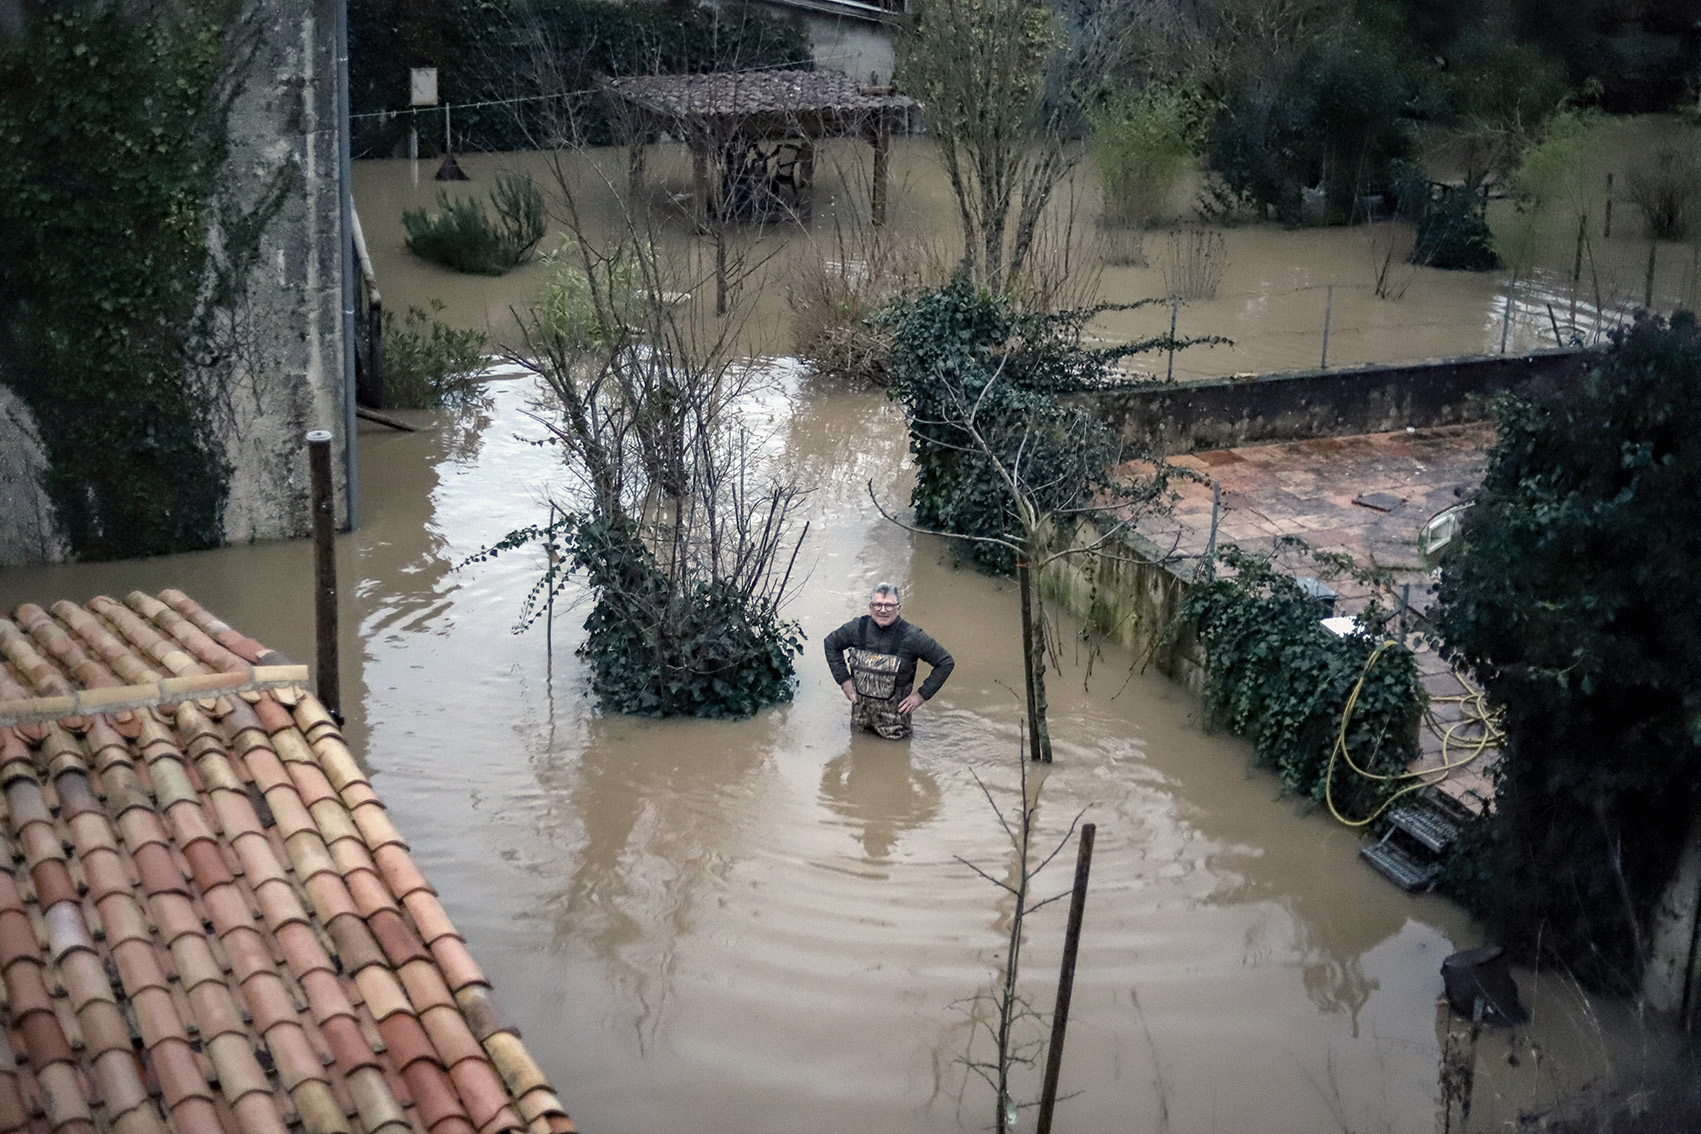 habitations inondées à la réole après de forts orages et des digues submergéesvers les affluents - Les débits d'eau font craindre des risques d'inonations